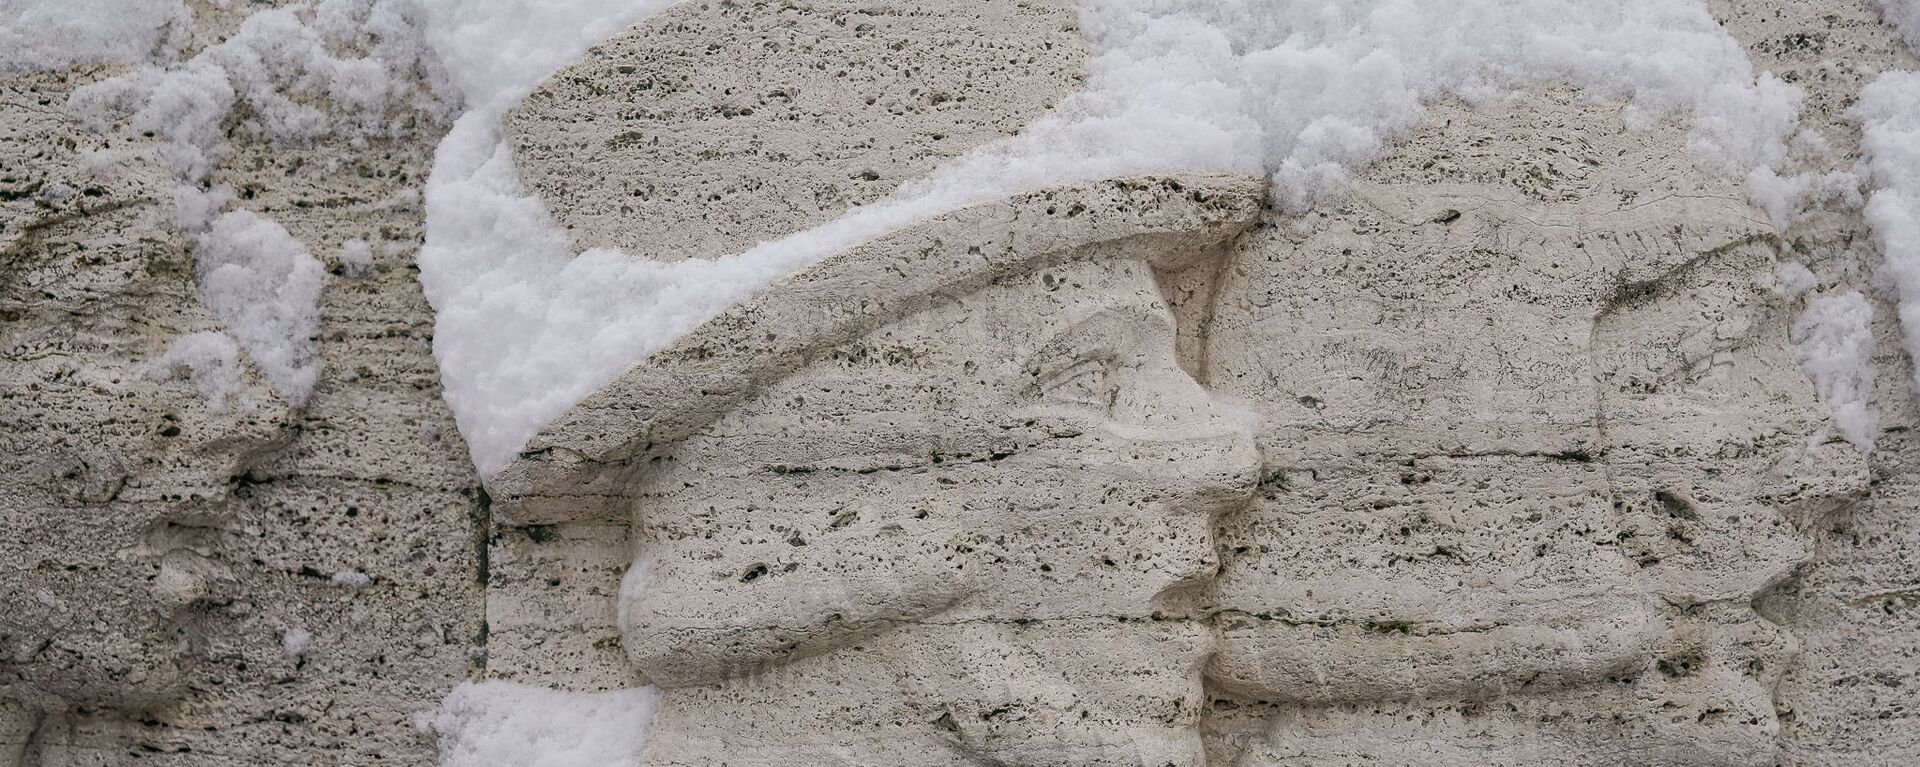 Снег на барельефе памятника Свободы в Риге - Sputnik Латвия, 1920, 19.01.2021